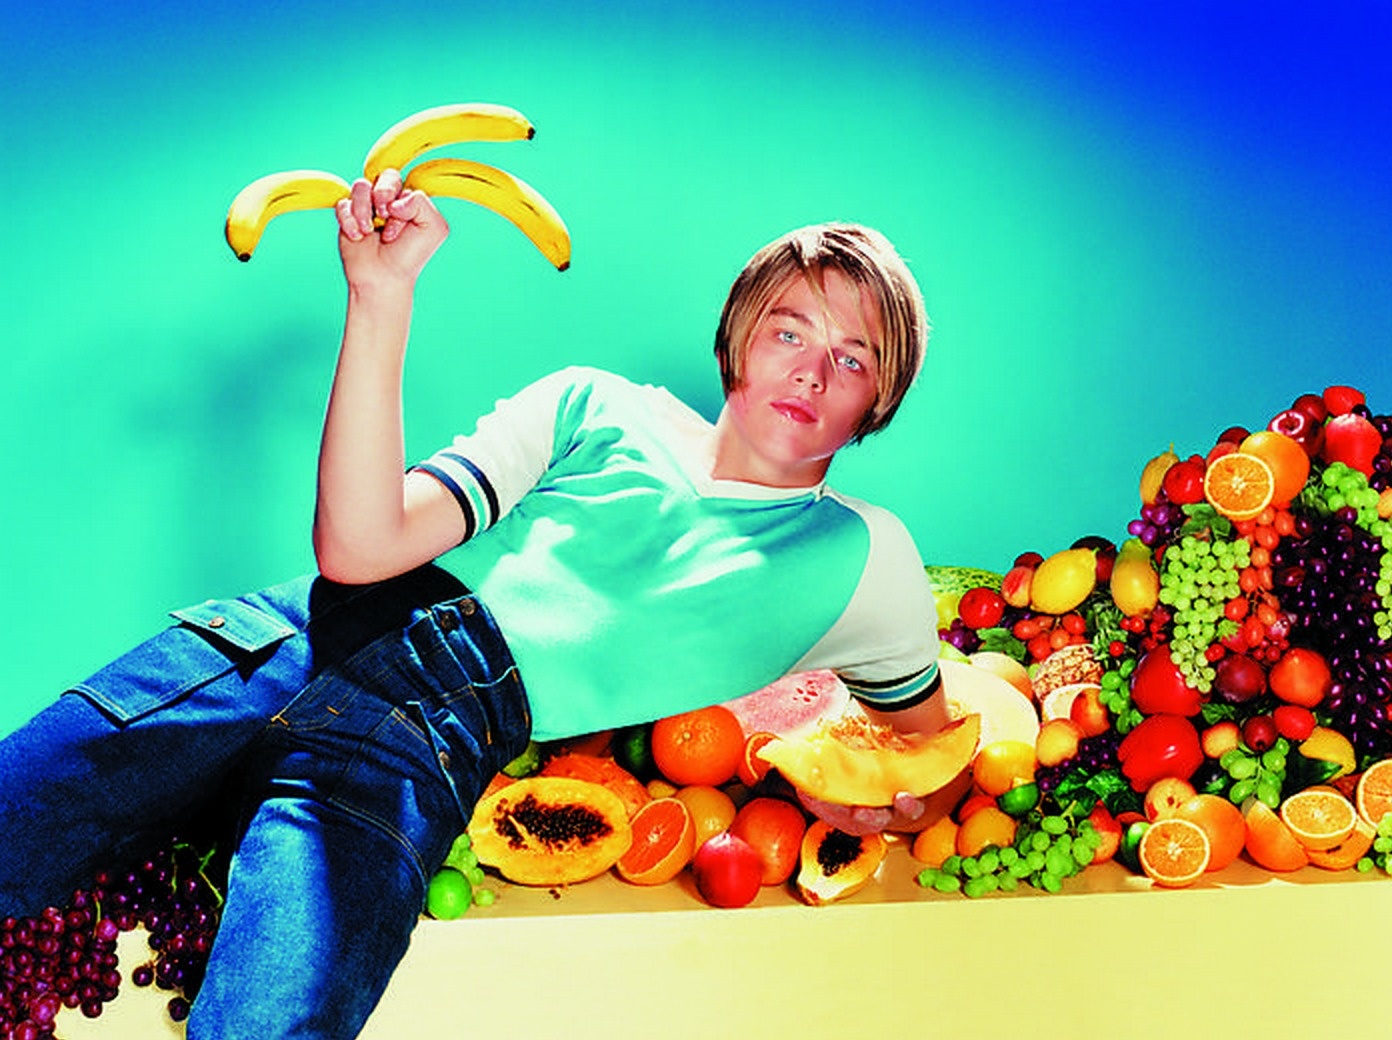 Leonardo DiCaprio's awkward pose with a banana.